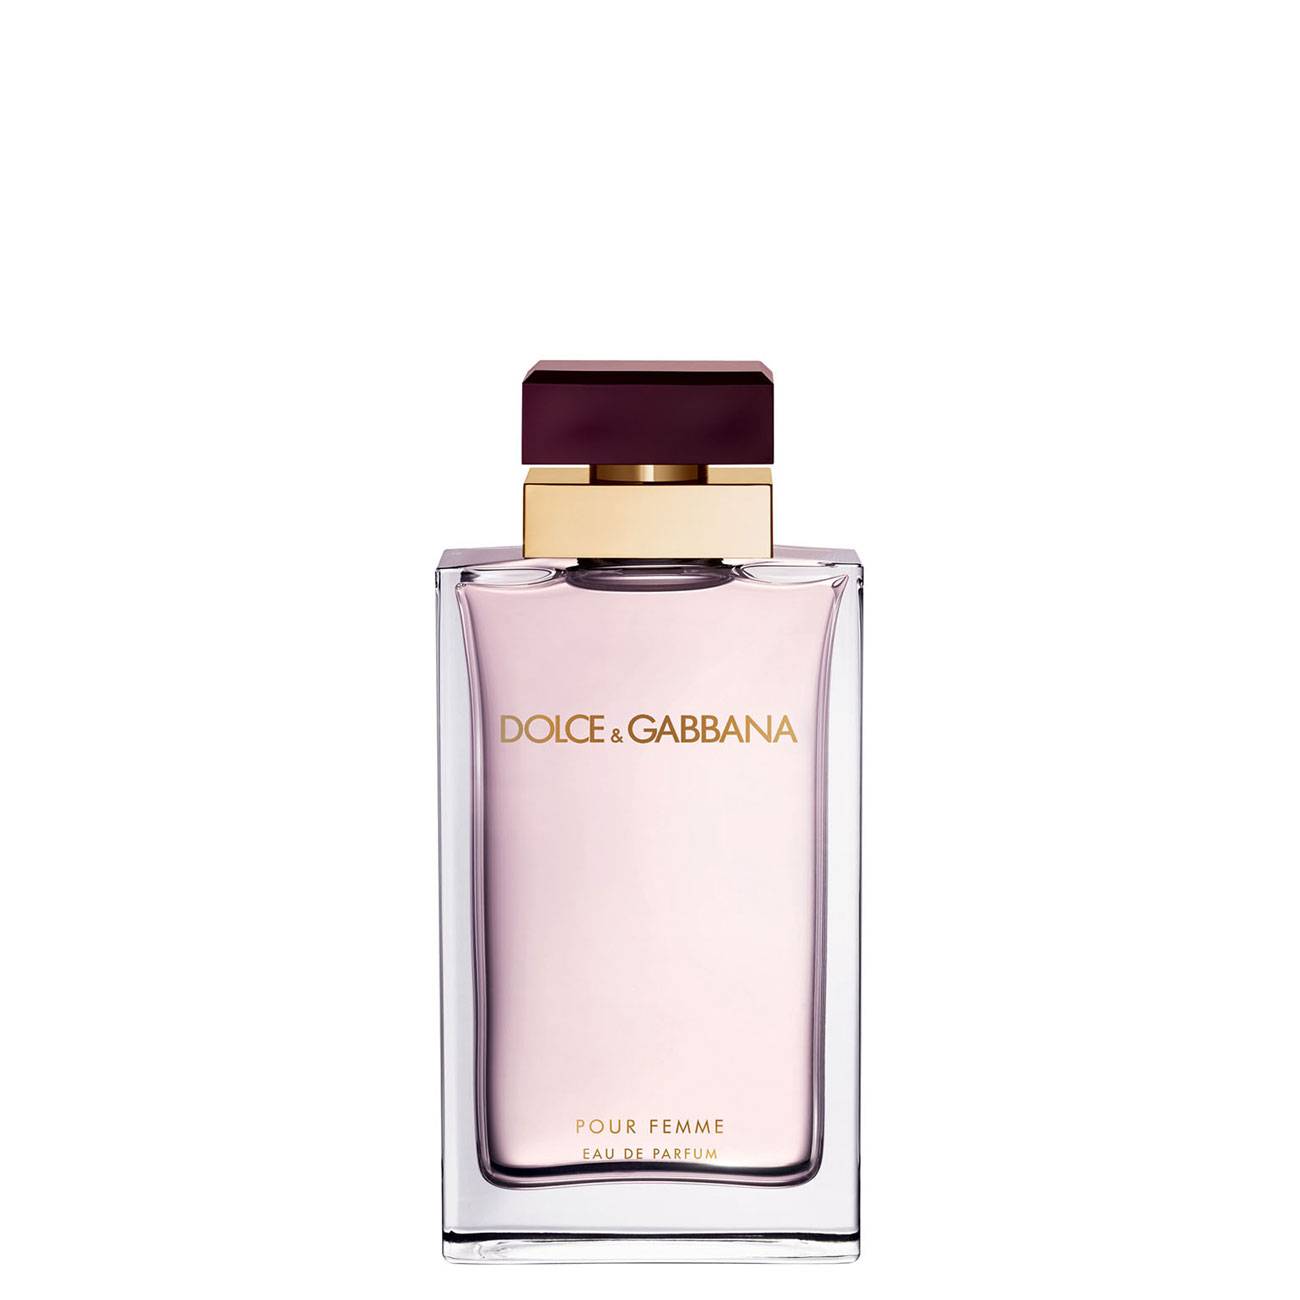 Apa de Parfum Dolce & Gabbana POUR FEMME 50ml cu comanda online